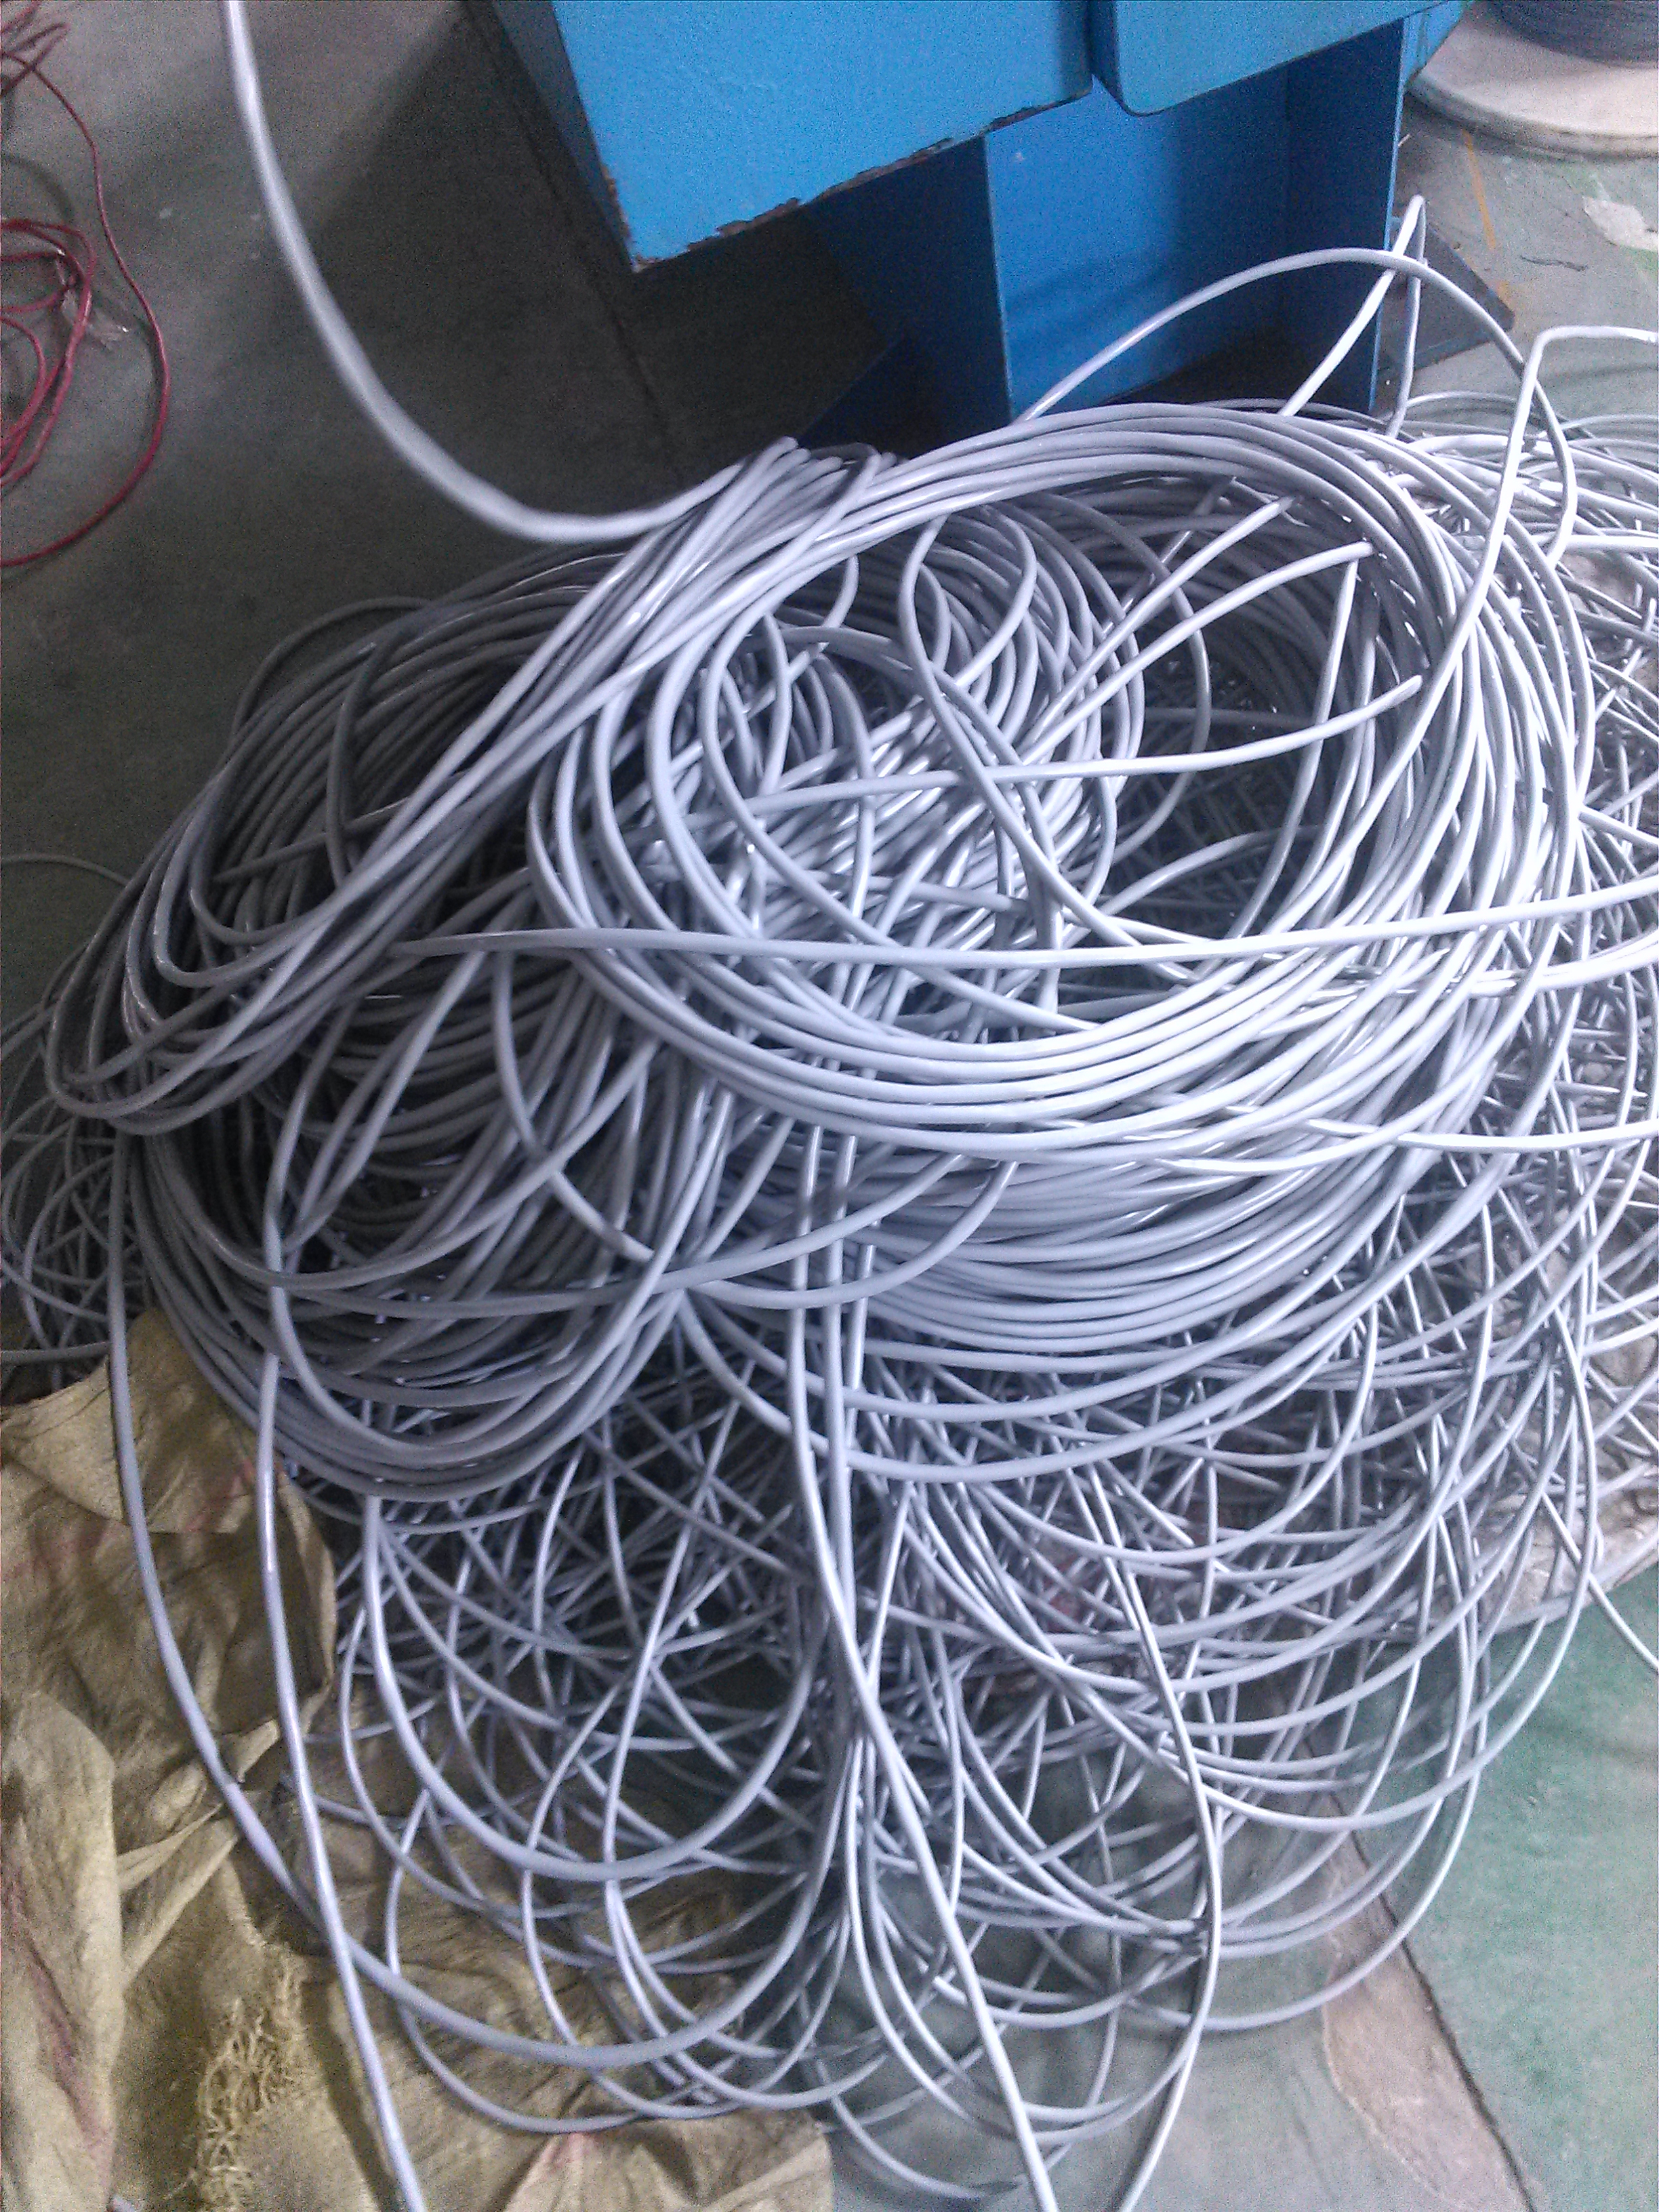 上海格采特种线缆有限公司上海格采电缆GCKM/FD-Y 上海格采拖电缆GCKM/FD-Y